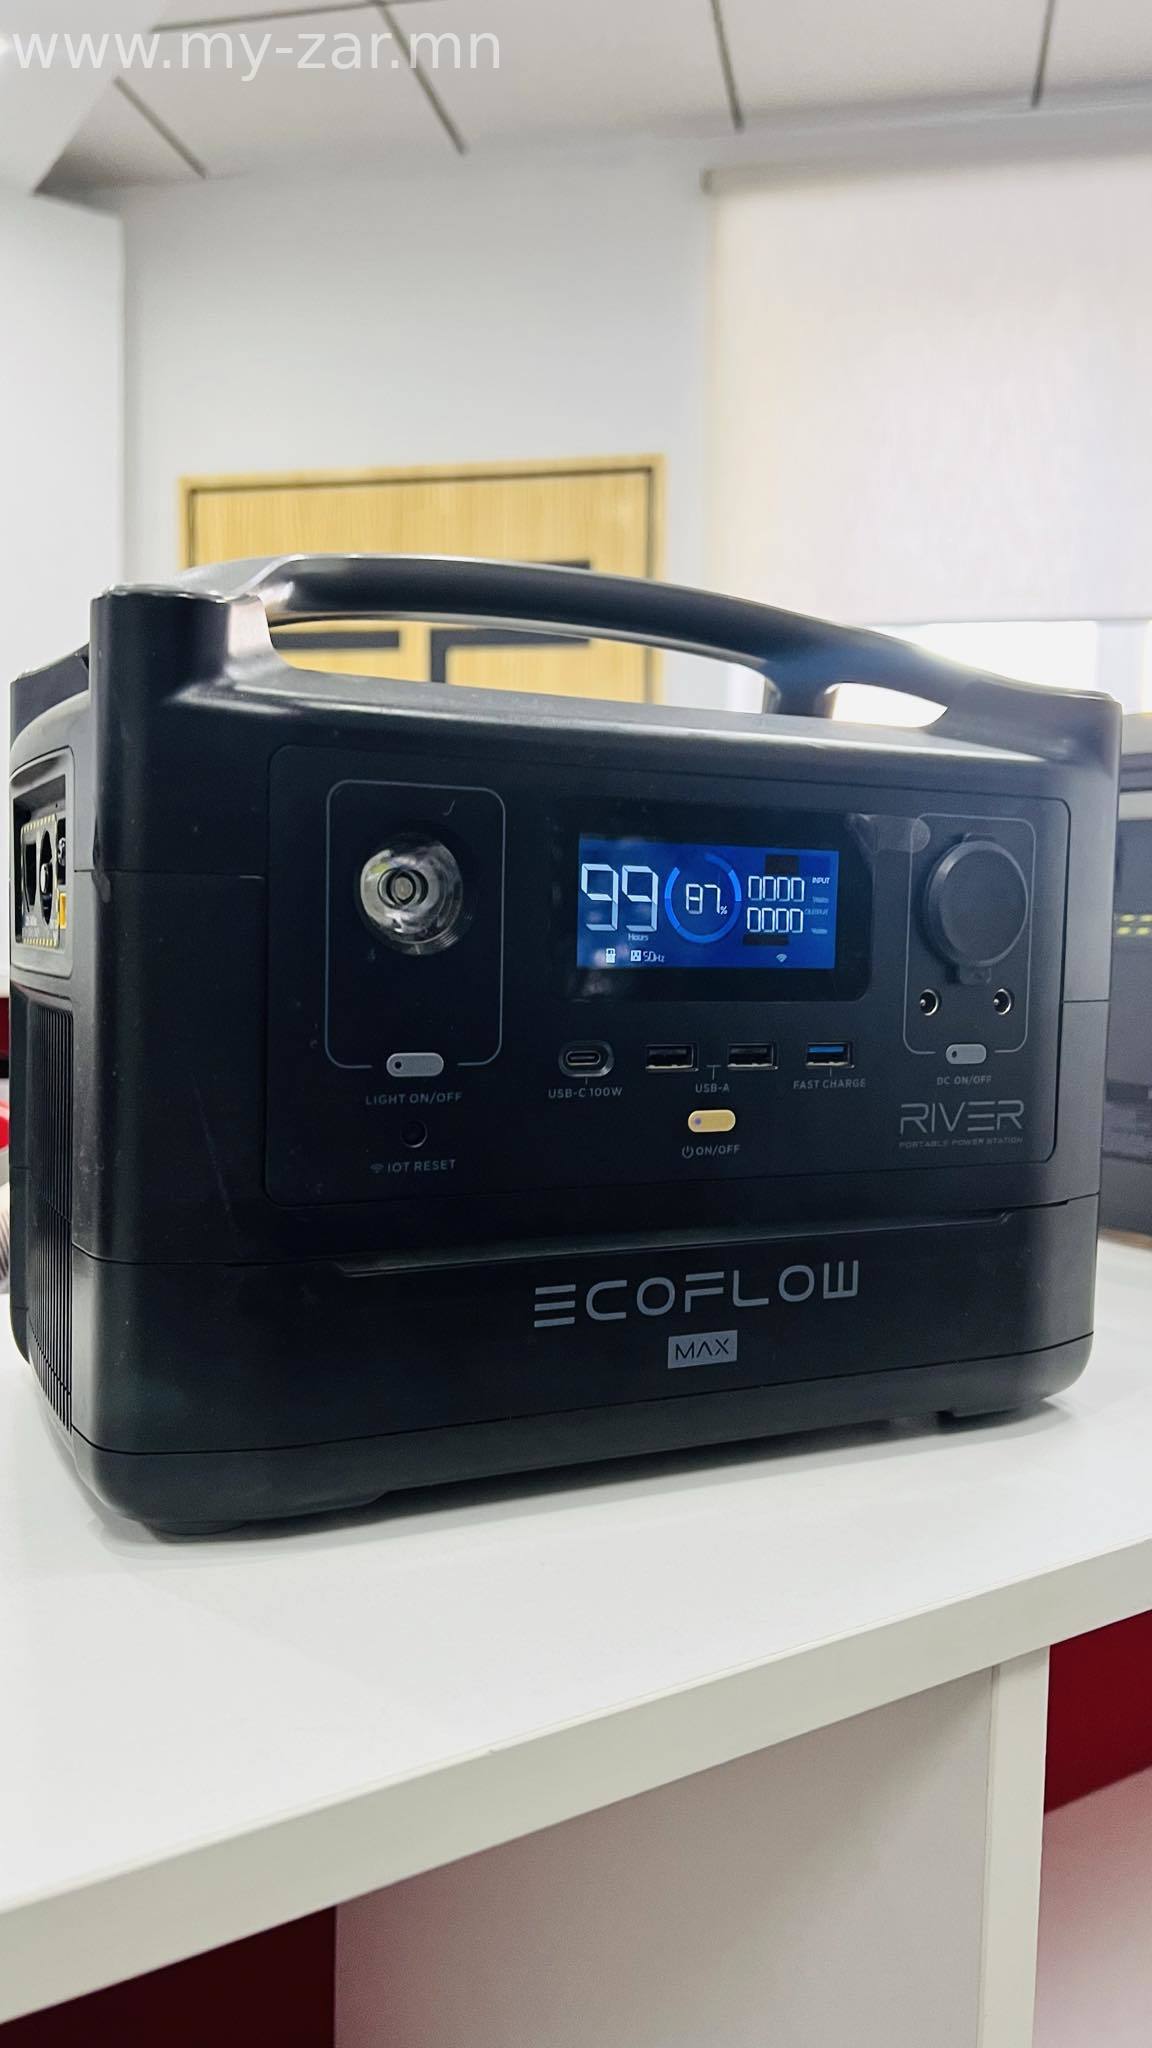 Зөөврийн цахилгаан үүсгүүр Ecoflow - 600W багтаамжтай баттерей - 1800W хүртэл ачааллах чадамжтай - 